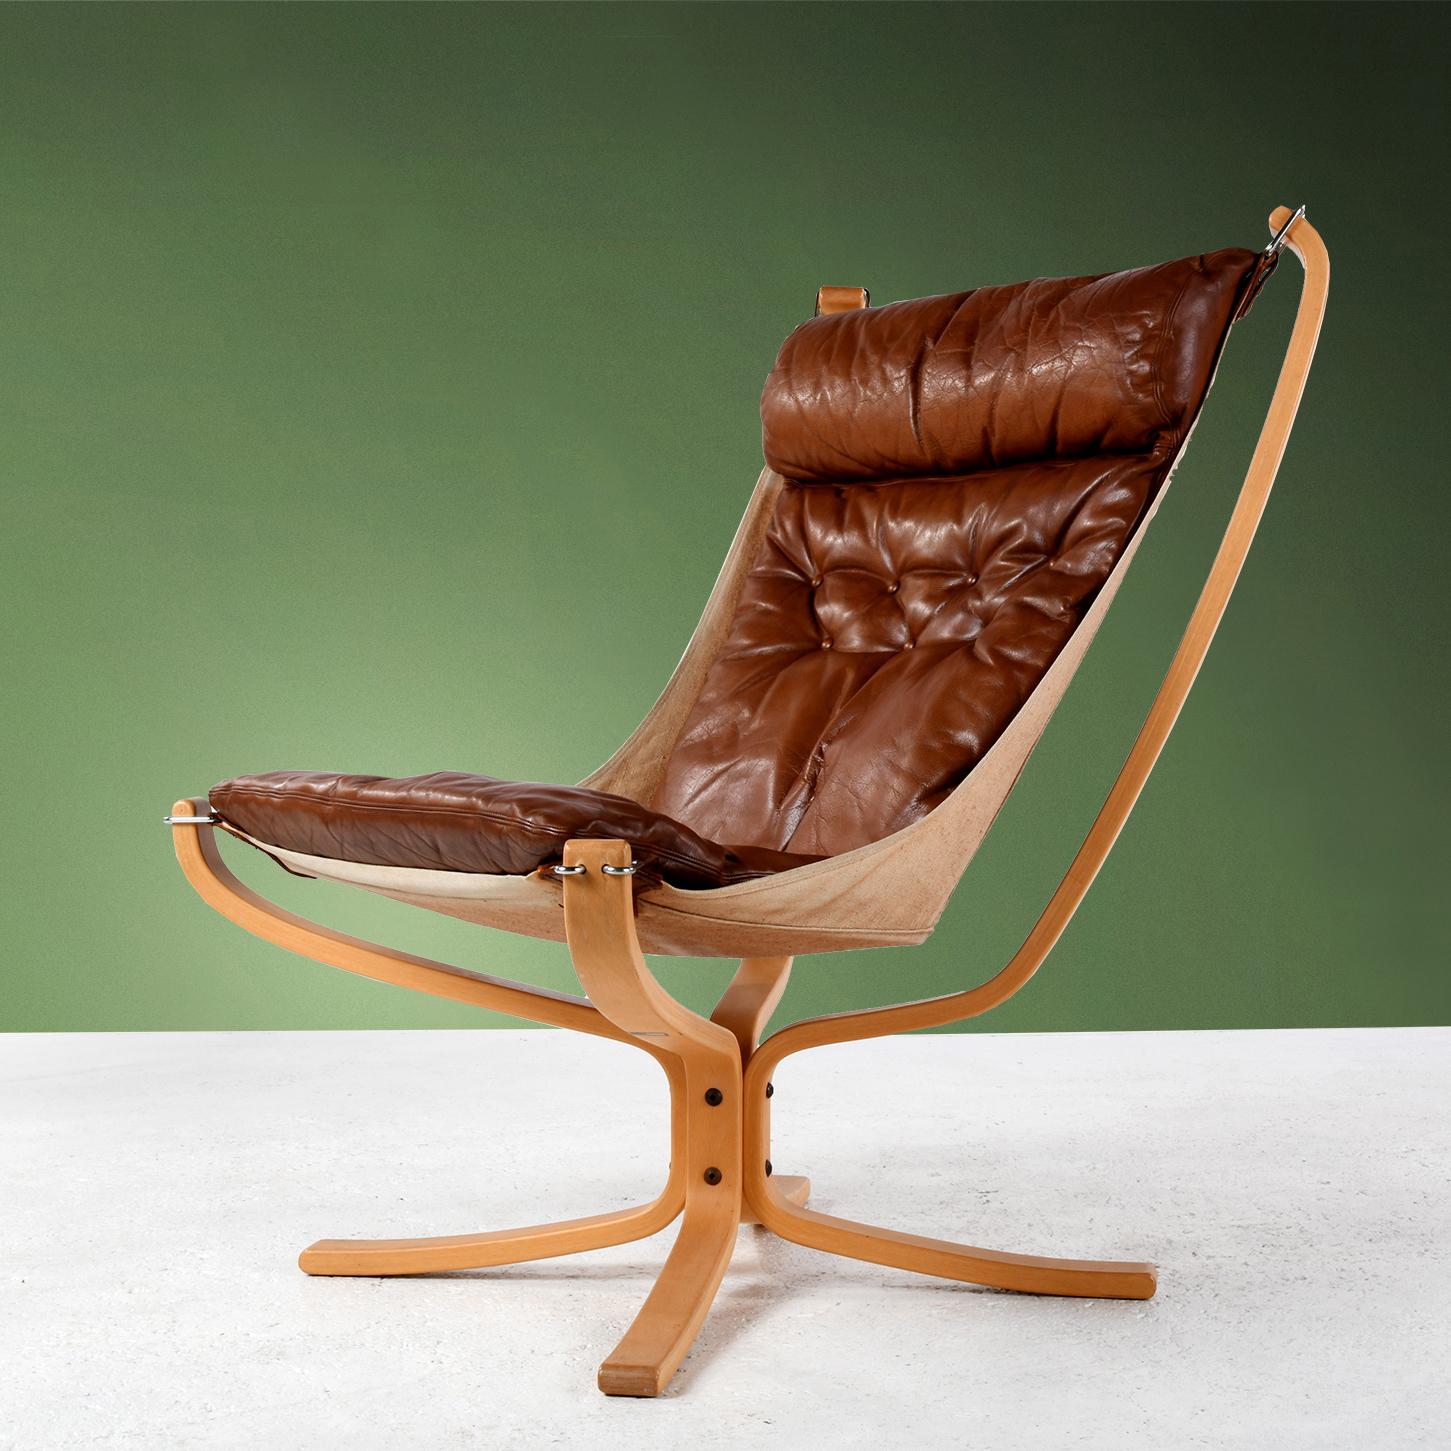 Der Stuhl Falcon wurde von dem norwegischen Designer Sigurd Ressell (1920-2010) entworfen und 1970 von dem norwegischen Hersteller Vatne produziert. Wie eine aufgehängte Hängematte besteht der Sessel aus einem starken Stoff, der mit 4 verchromten